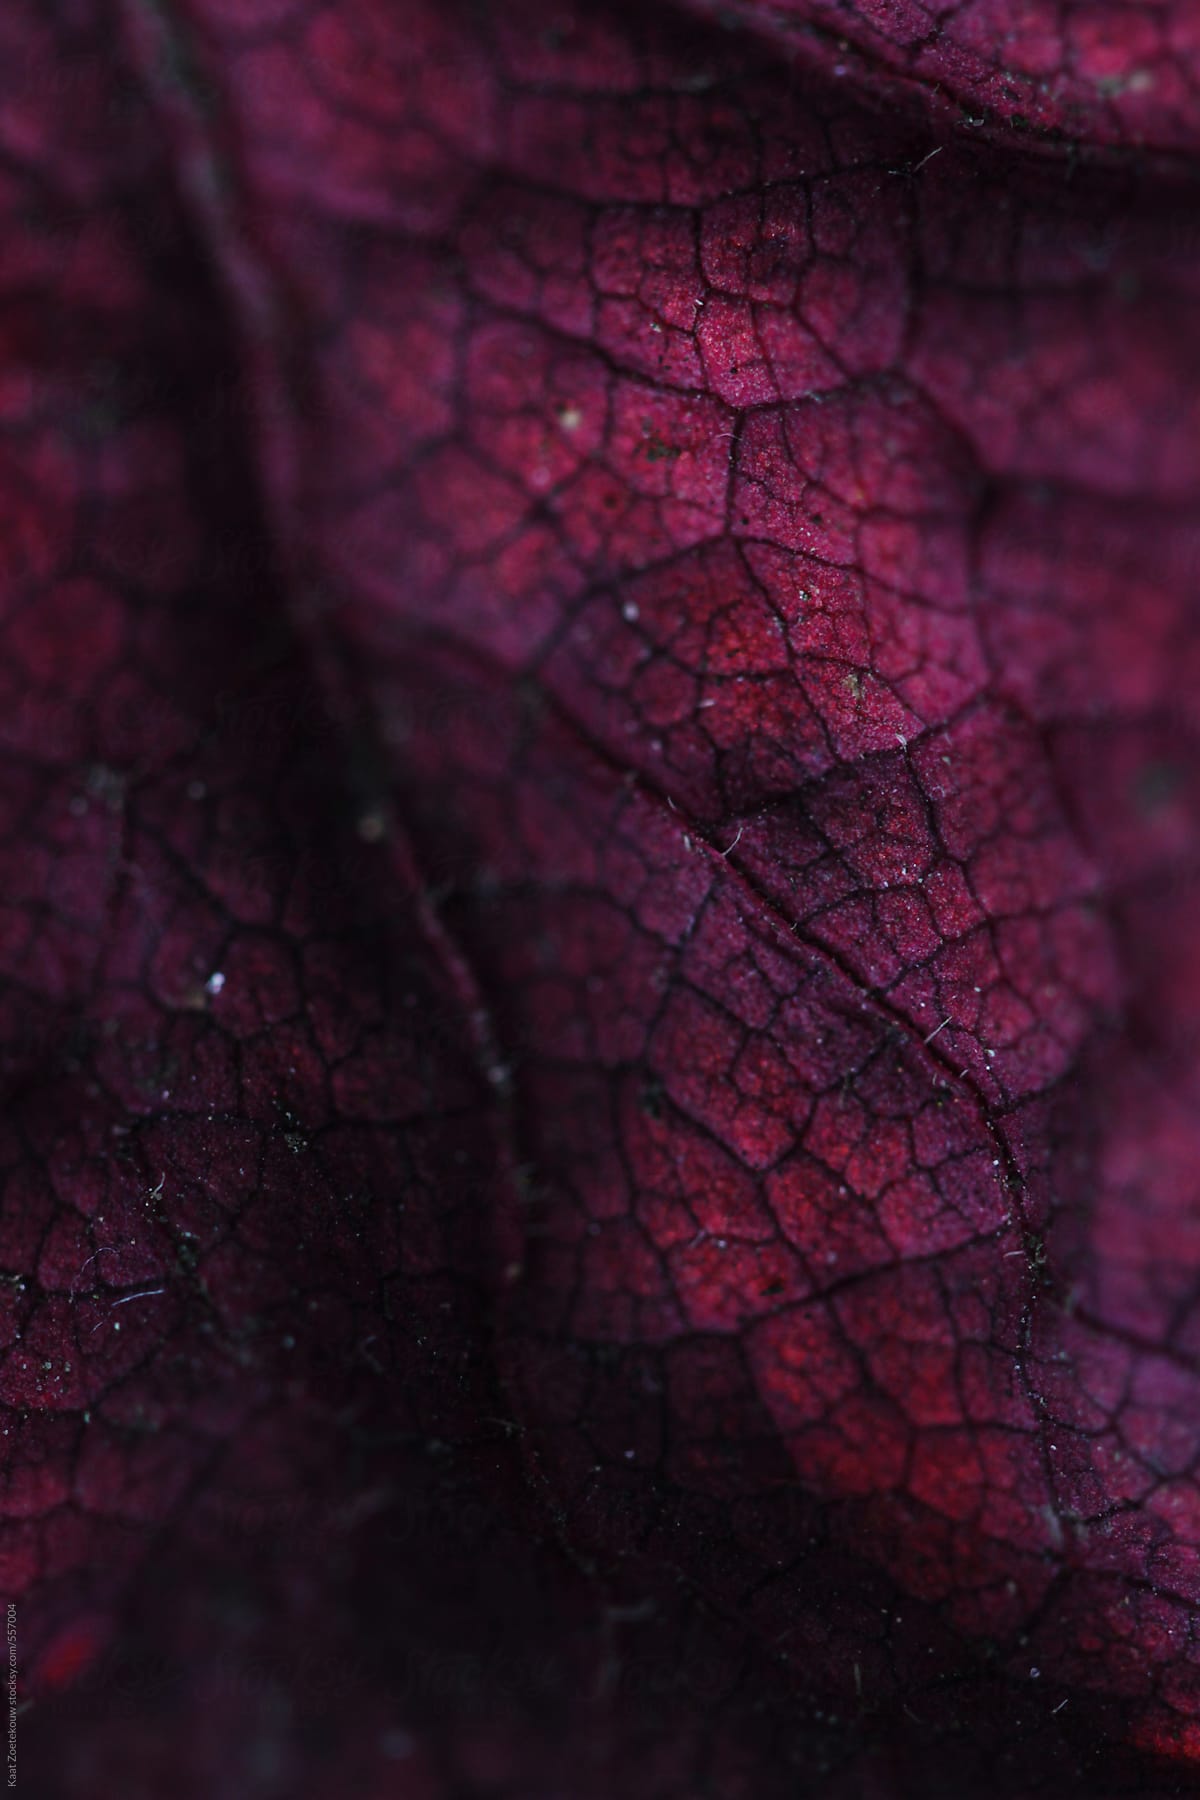 Close-up of a dried purple Heuchera leaf